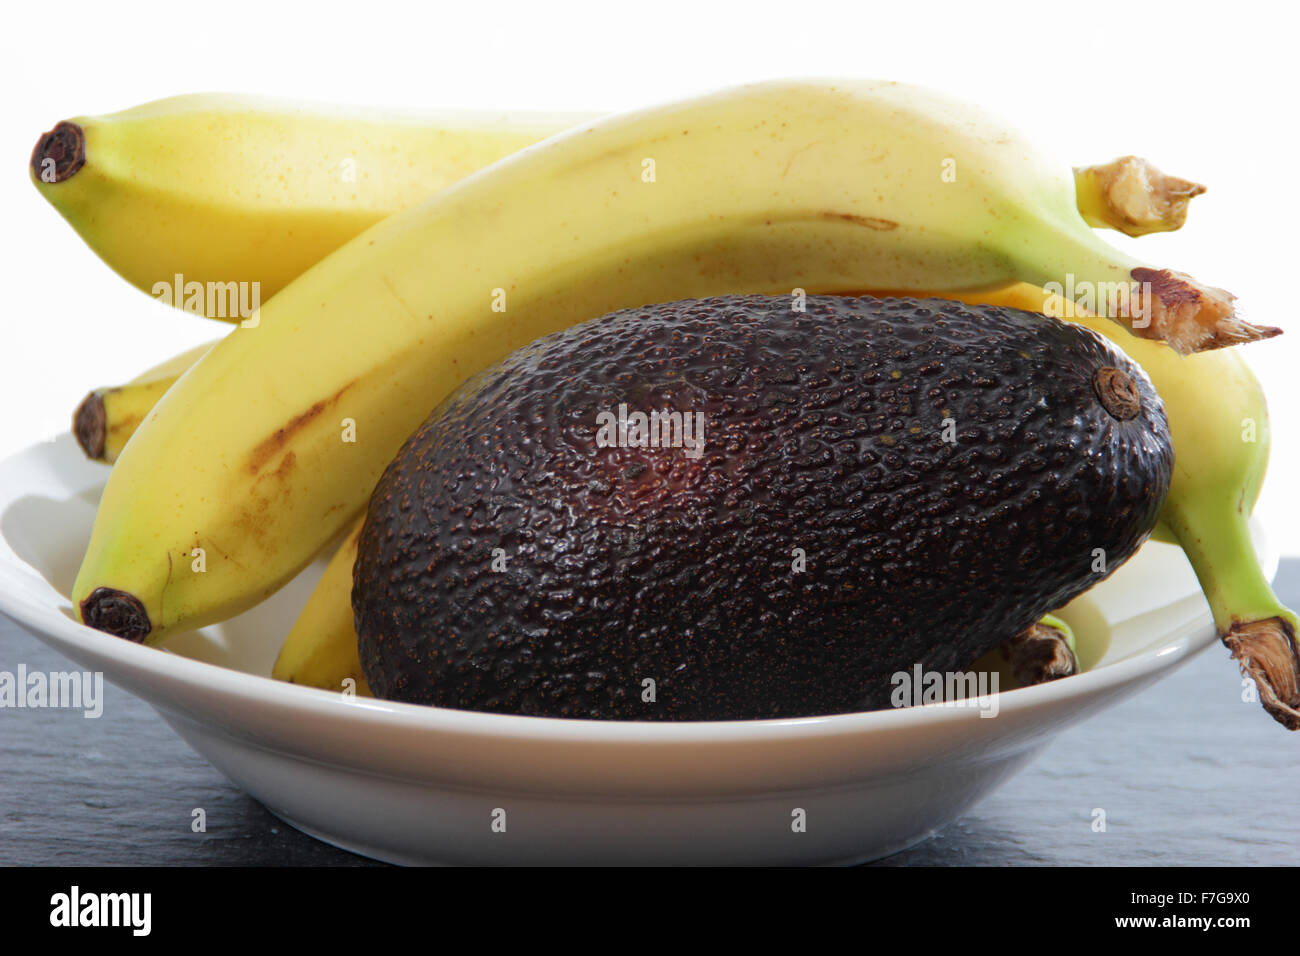 Bananen in eine Schüssel mit Avocado, die Reifung zu beschleunigen verarbeiten - häusliche Umgebung, UK Stockfoto